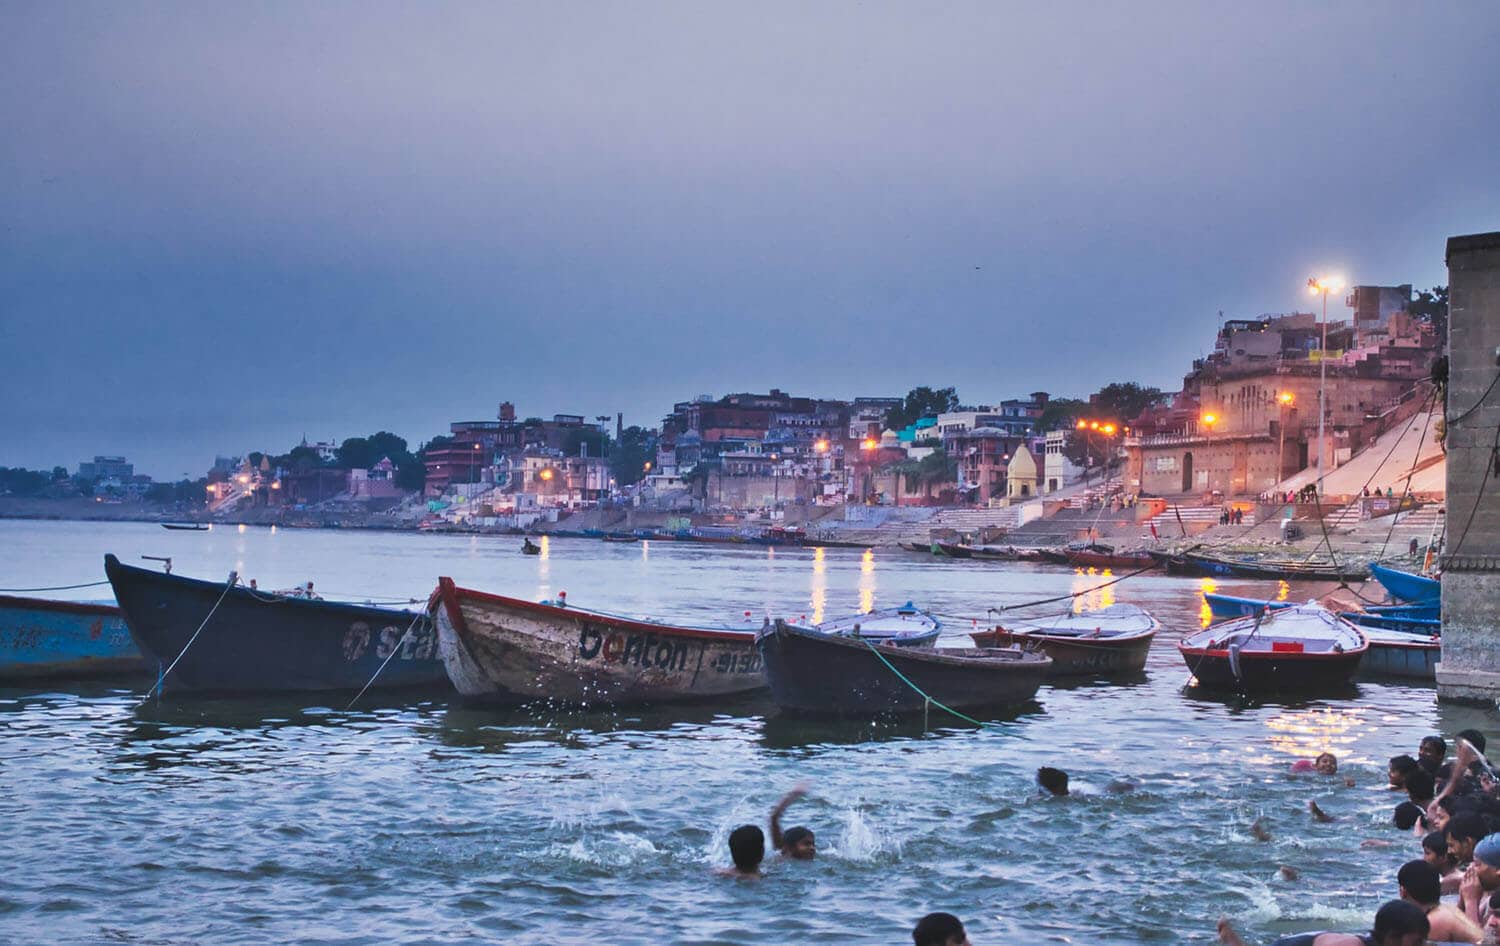 spiritual land of India, Banaras